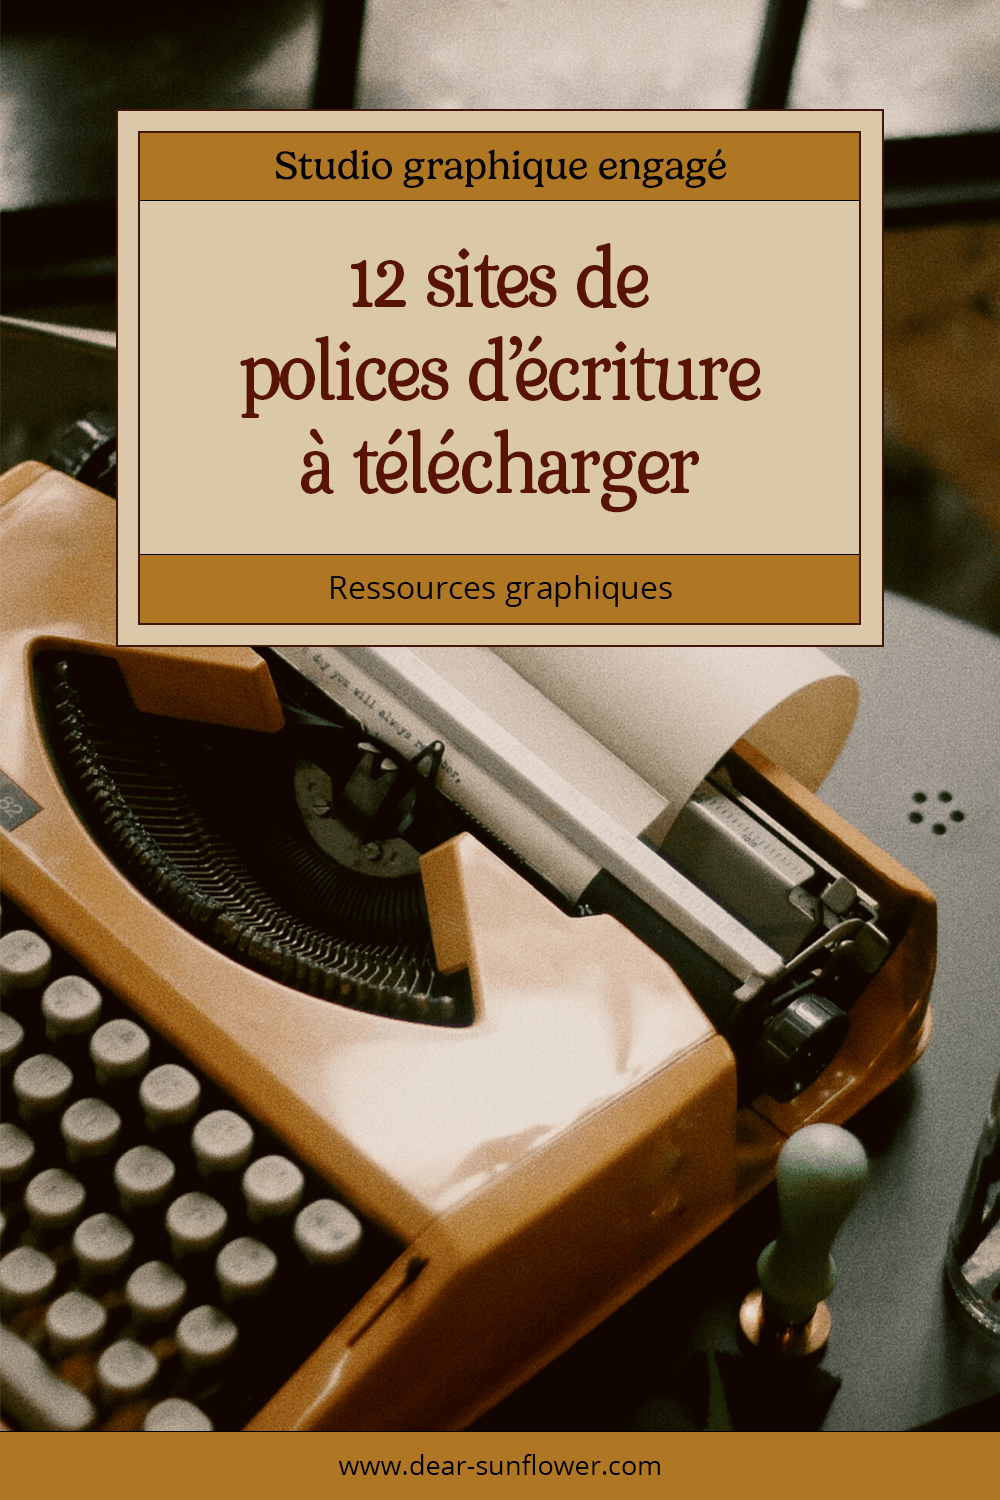 Épingle Pinterest pour l'article de blog "12 sites de polices d'écriture à télécharger"